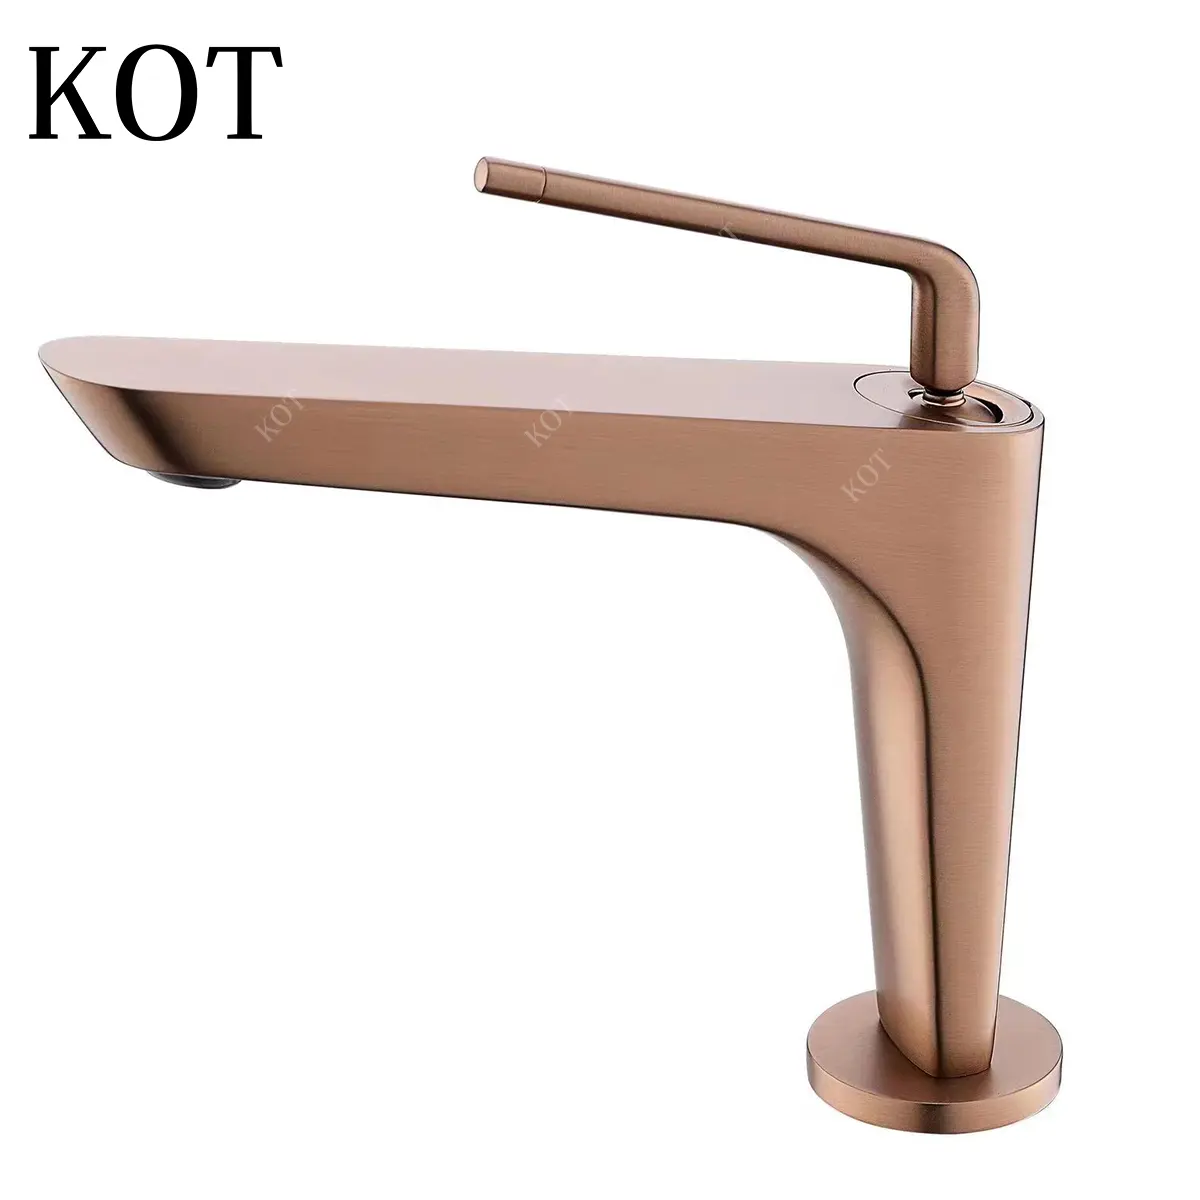 KOT Centro comercial Accesorios de baño Acero inoxidable Latón Filtro de agua para inodoro Grifos de lavabo de tocador